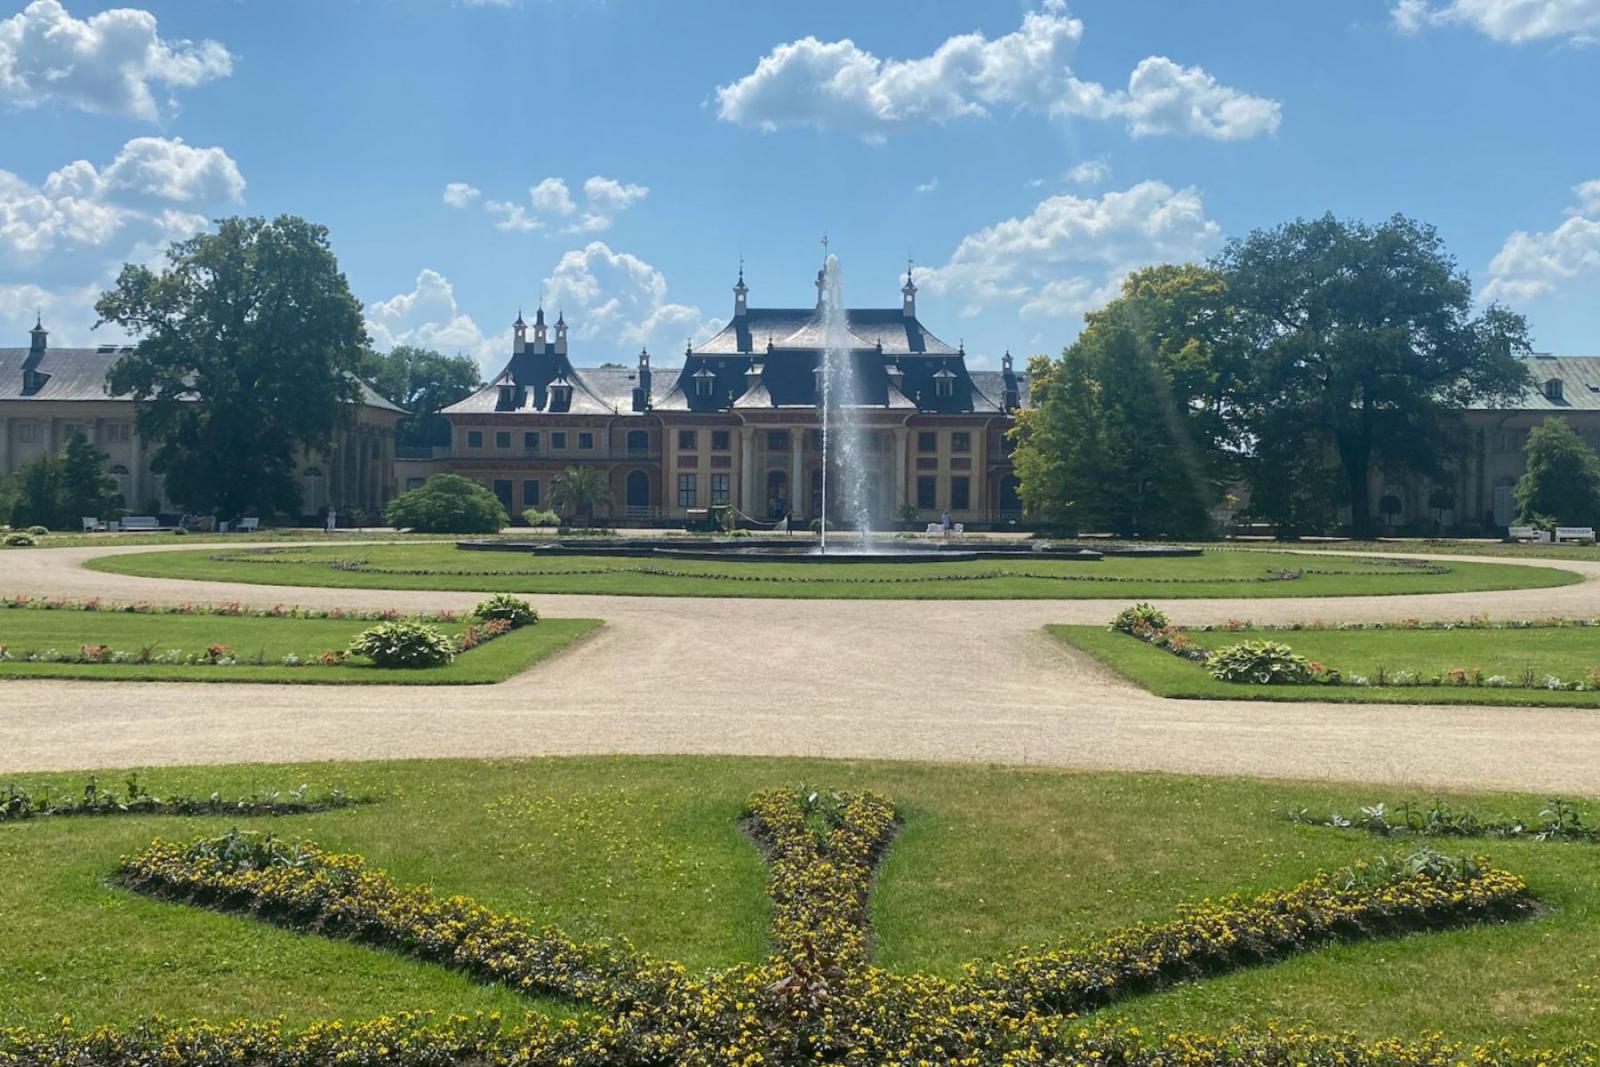 Het paleis van Pillnitz bestaat eigenlijk uit drie gebouwen met daar tussen grote tuinen | CityZapper